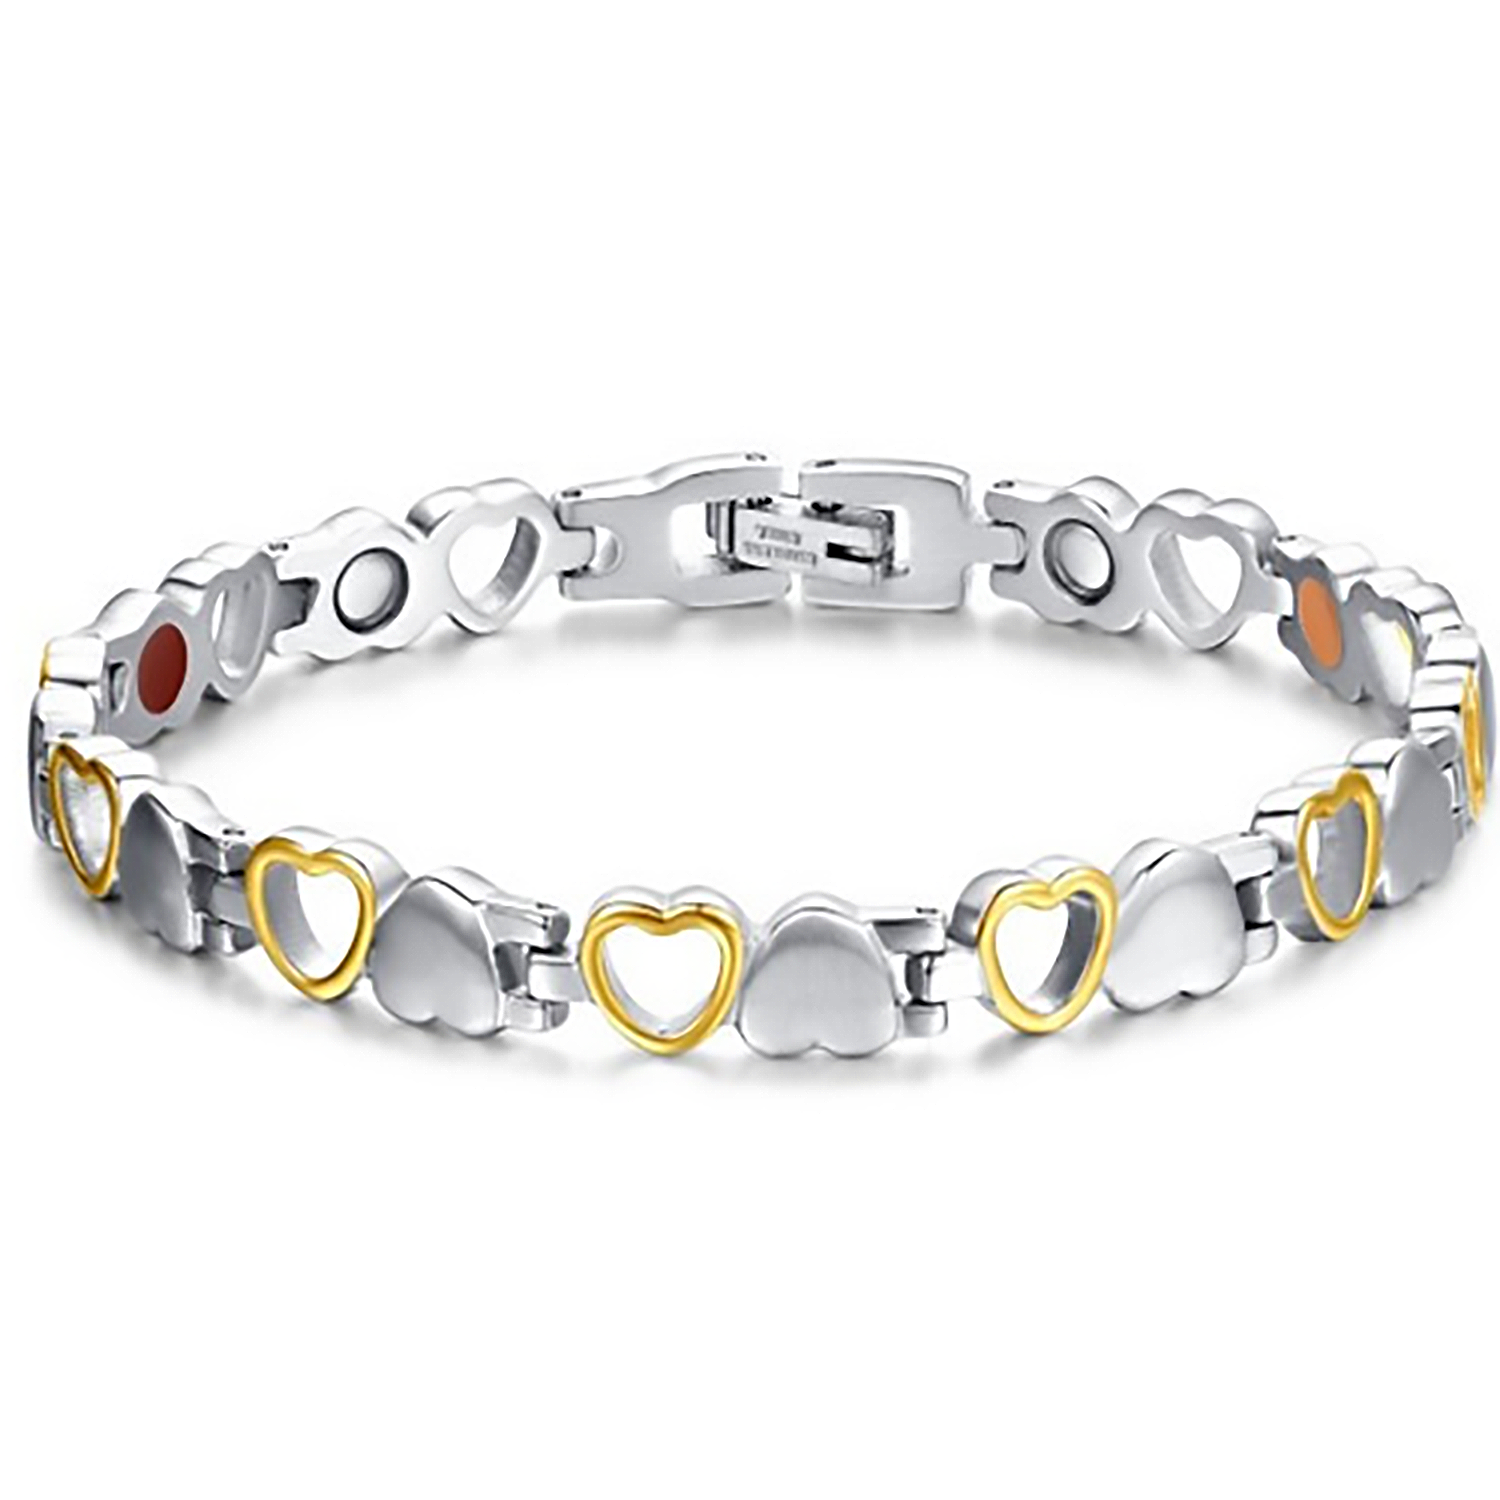 Stainless Steel Heart Bracelet